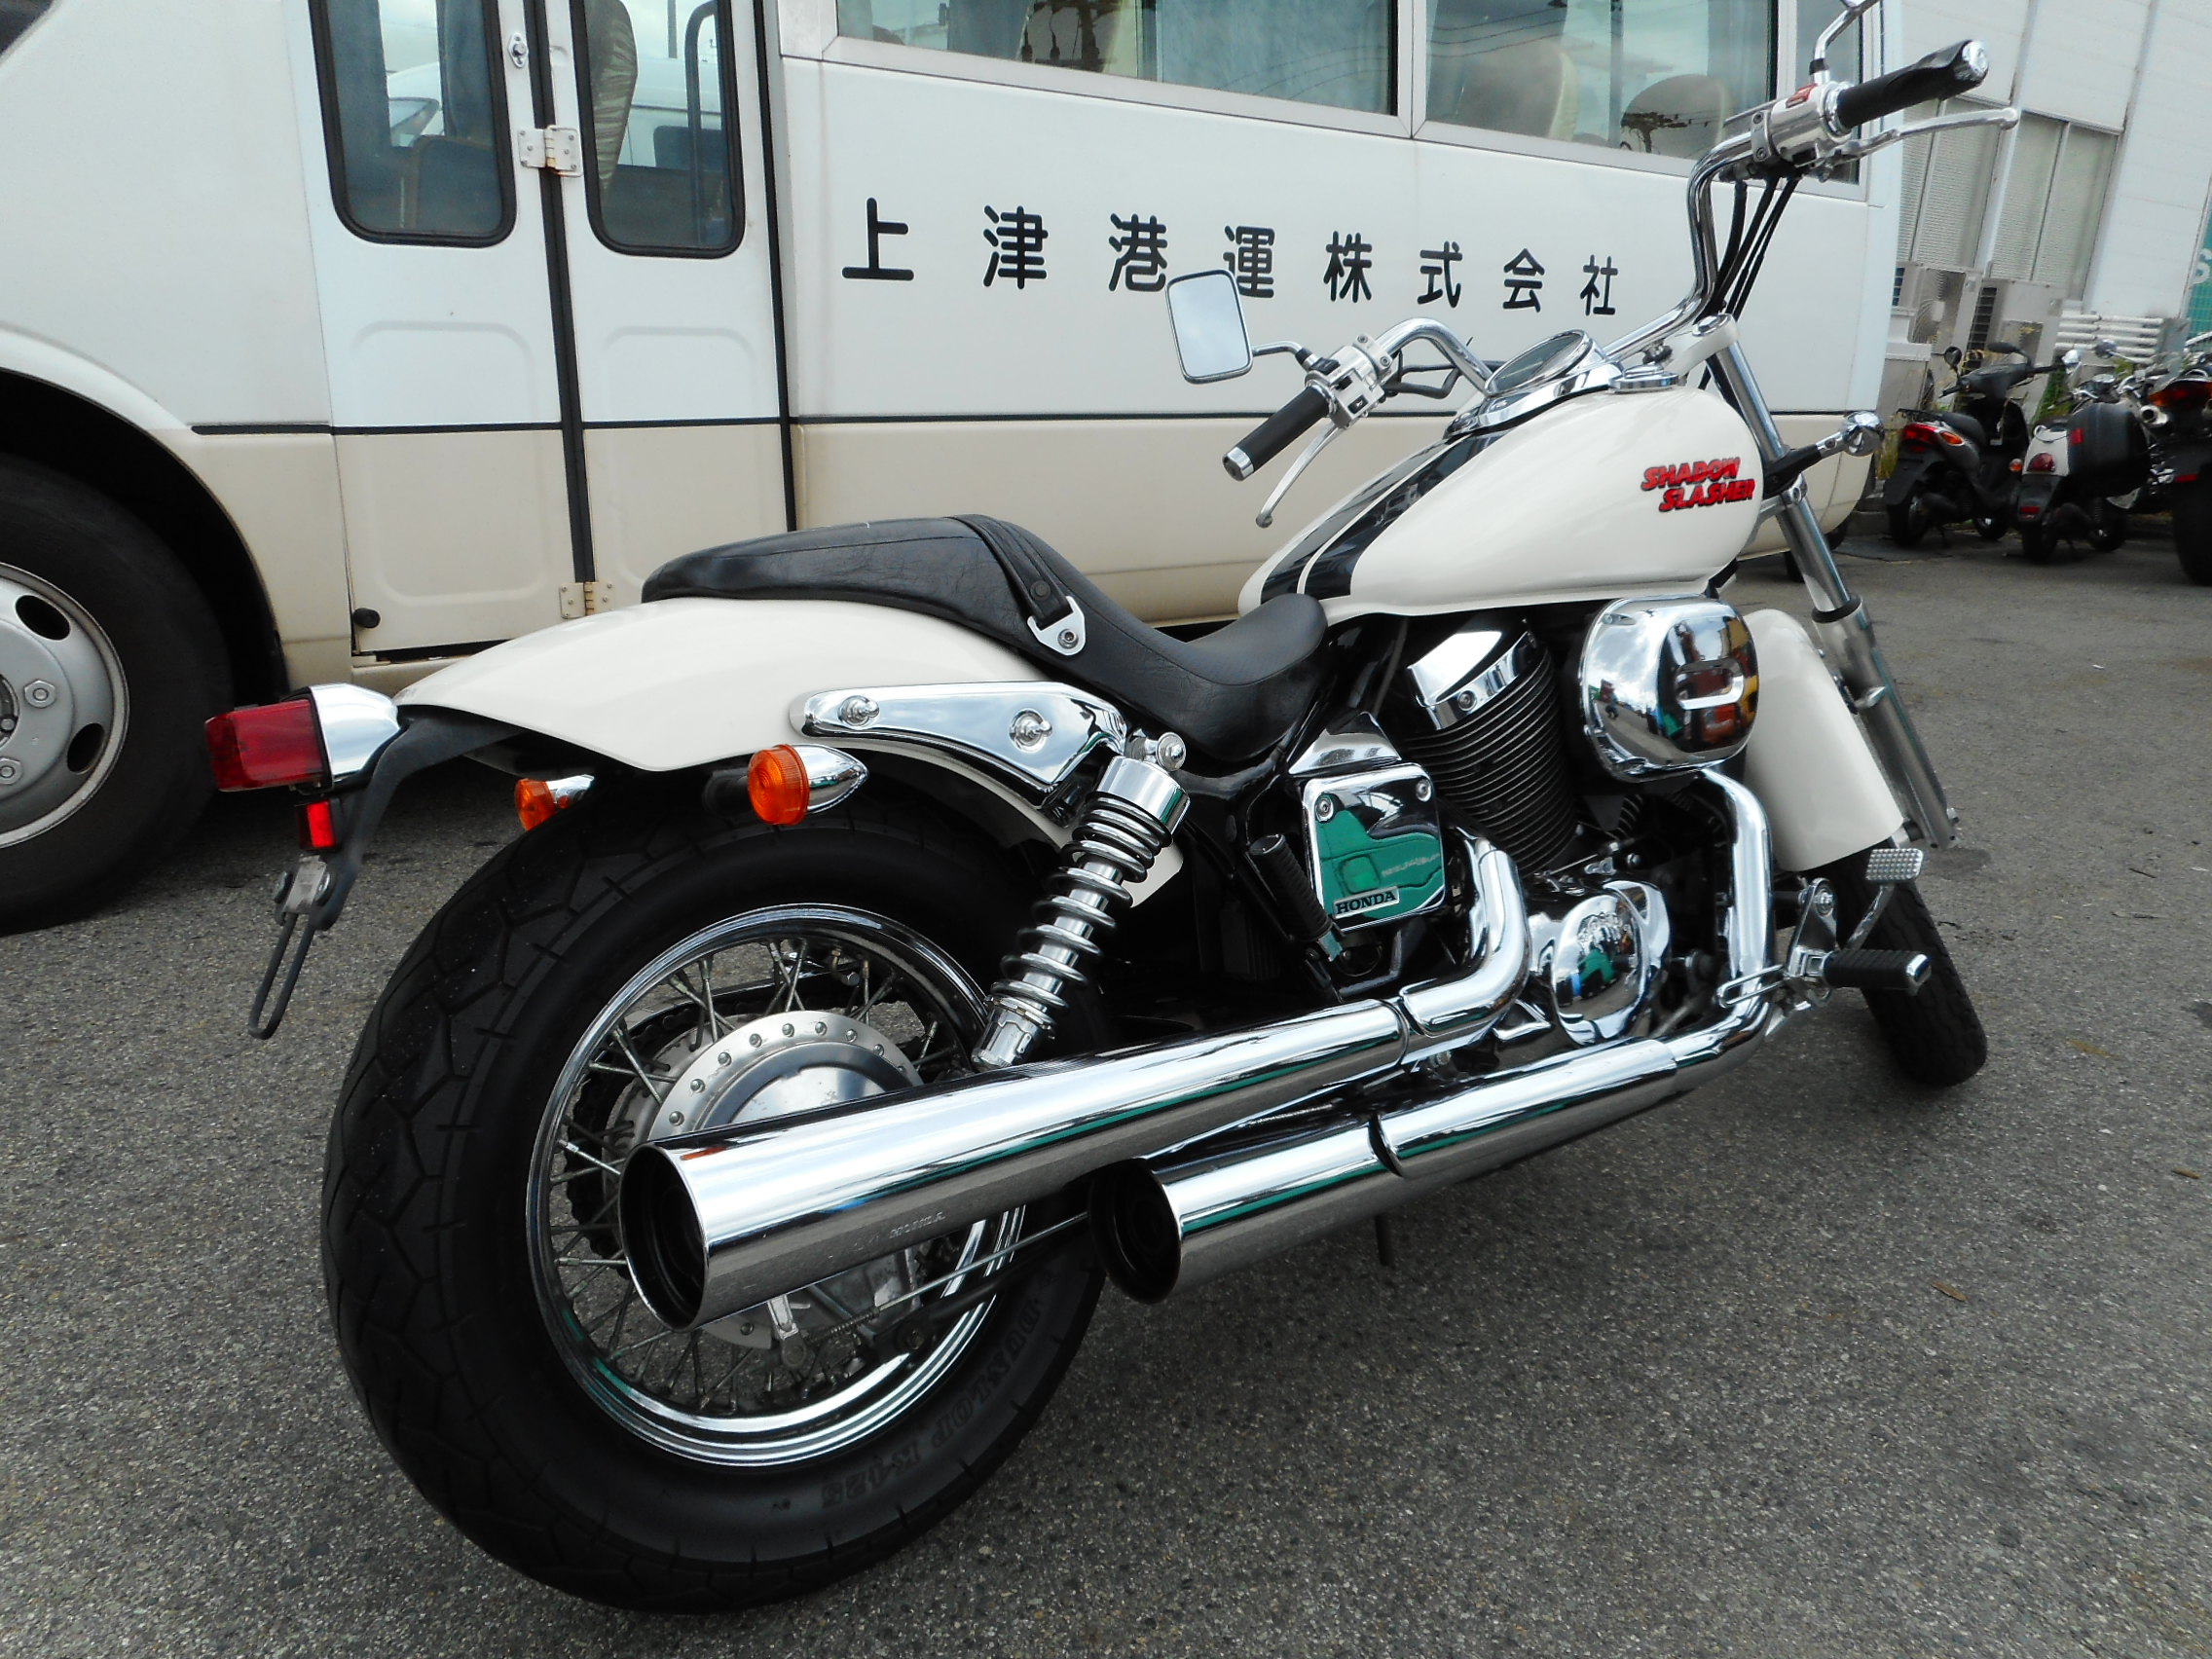 Обзор мотоцикла Honda Shadow Slasher (Хонда Шадов Слэшер) 400